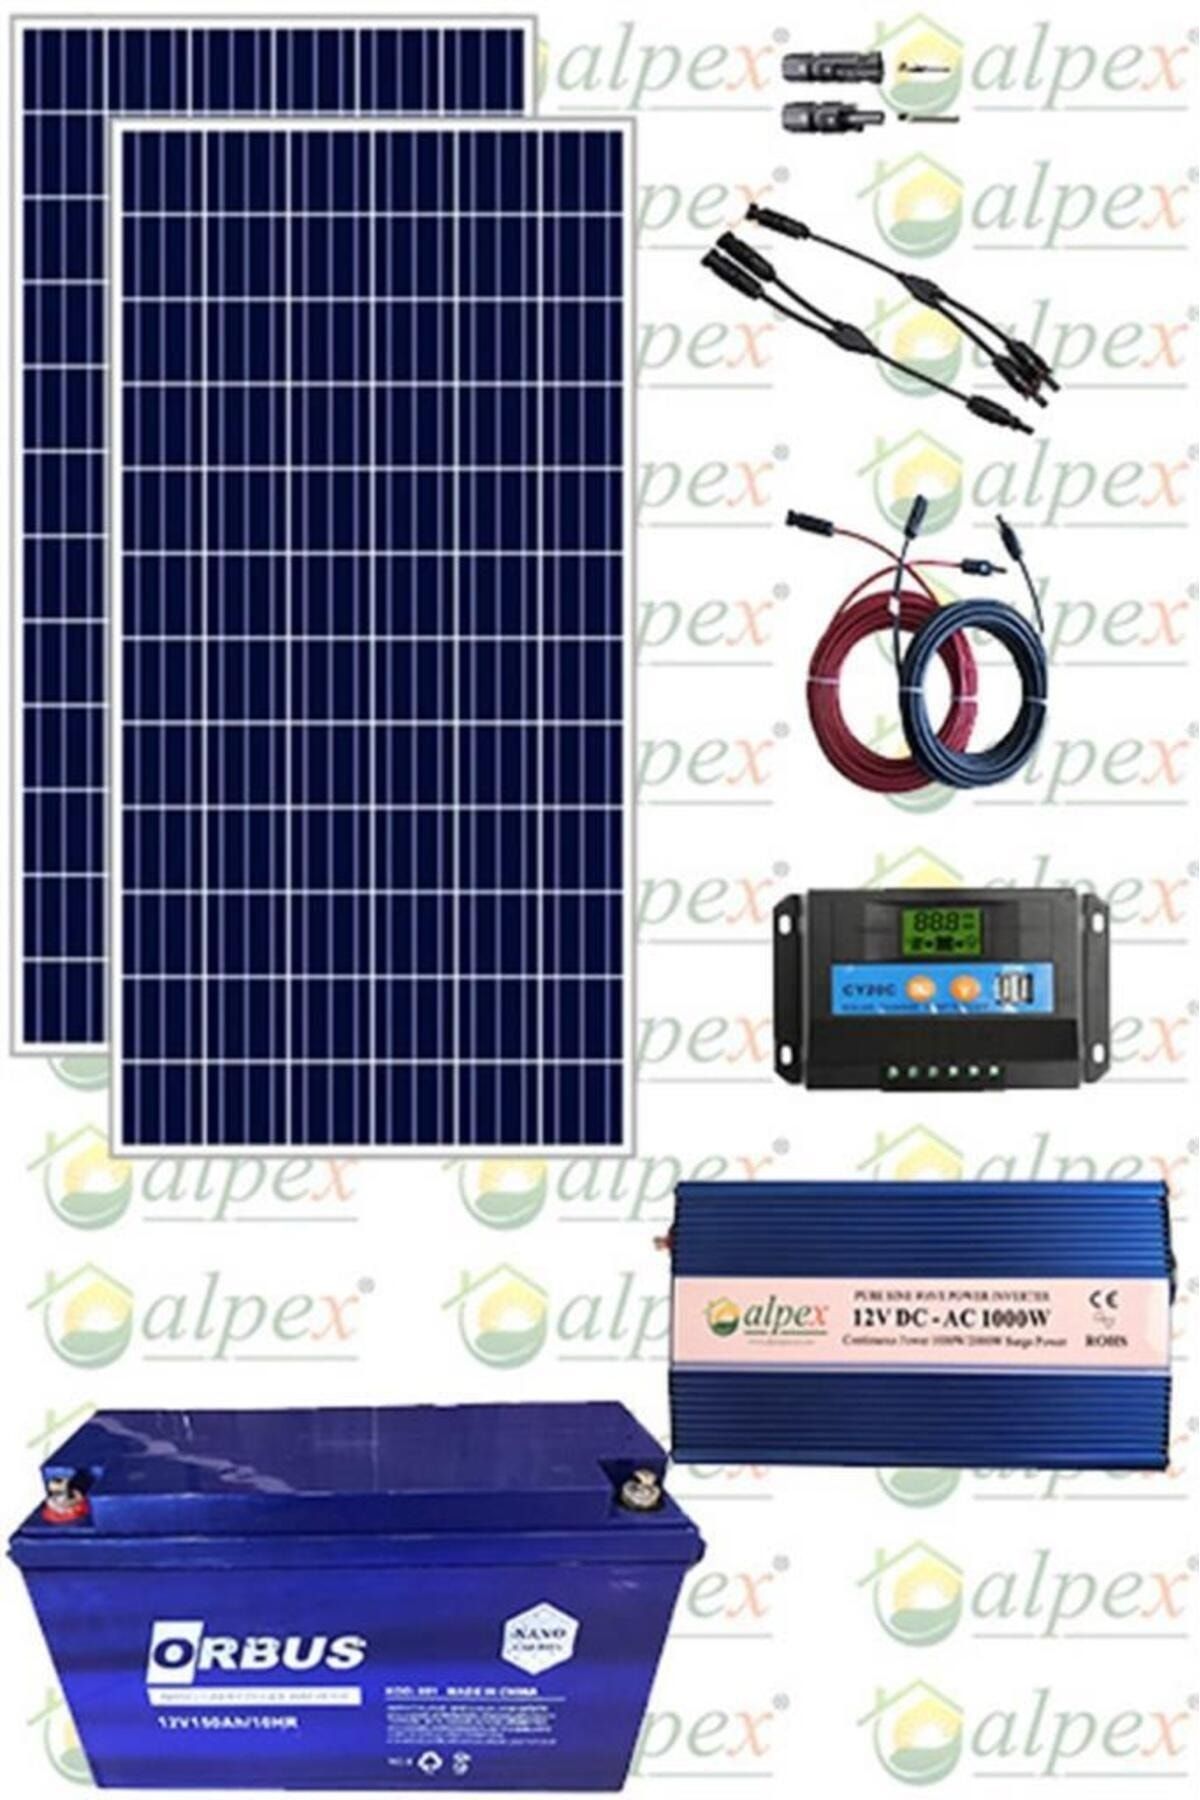 Alpex Bağ Evi Güneş Enerjisi Solar Paket Sp330 170w Güneş Paneli 100 Ah Jel Akü 1000w Inverter